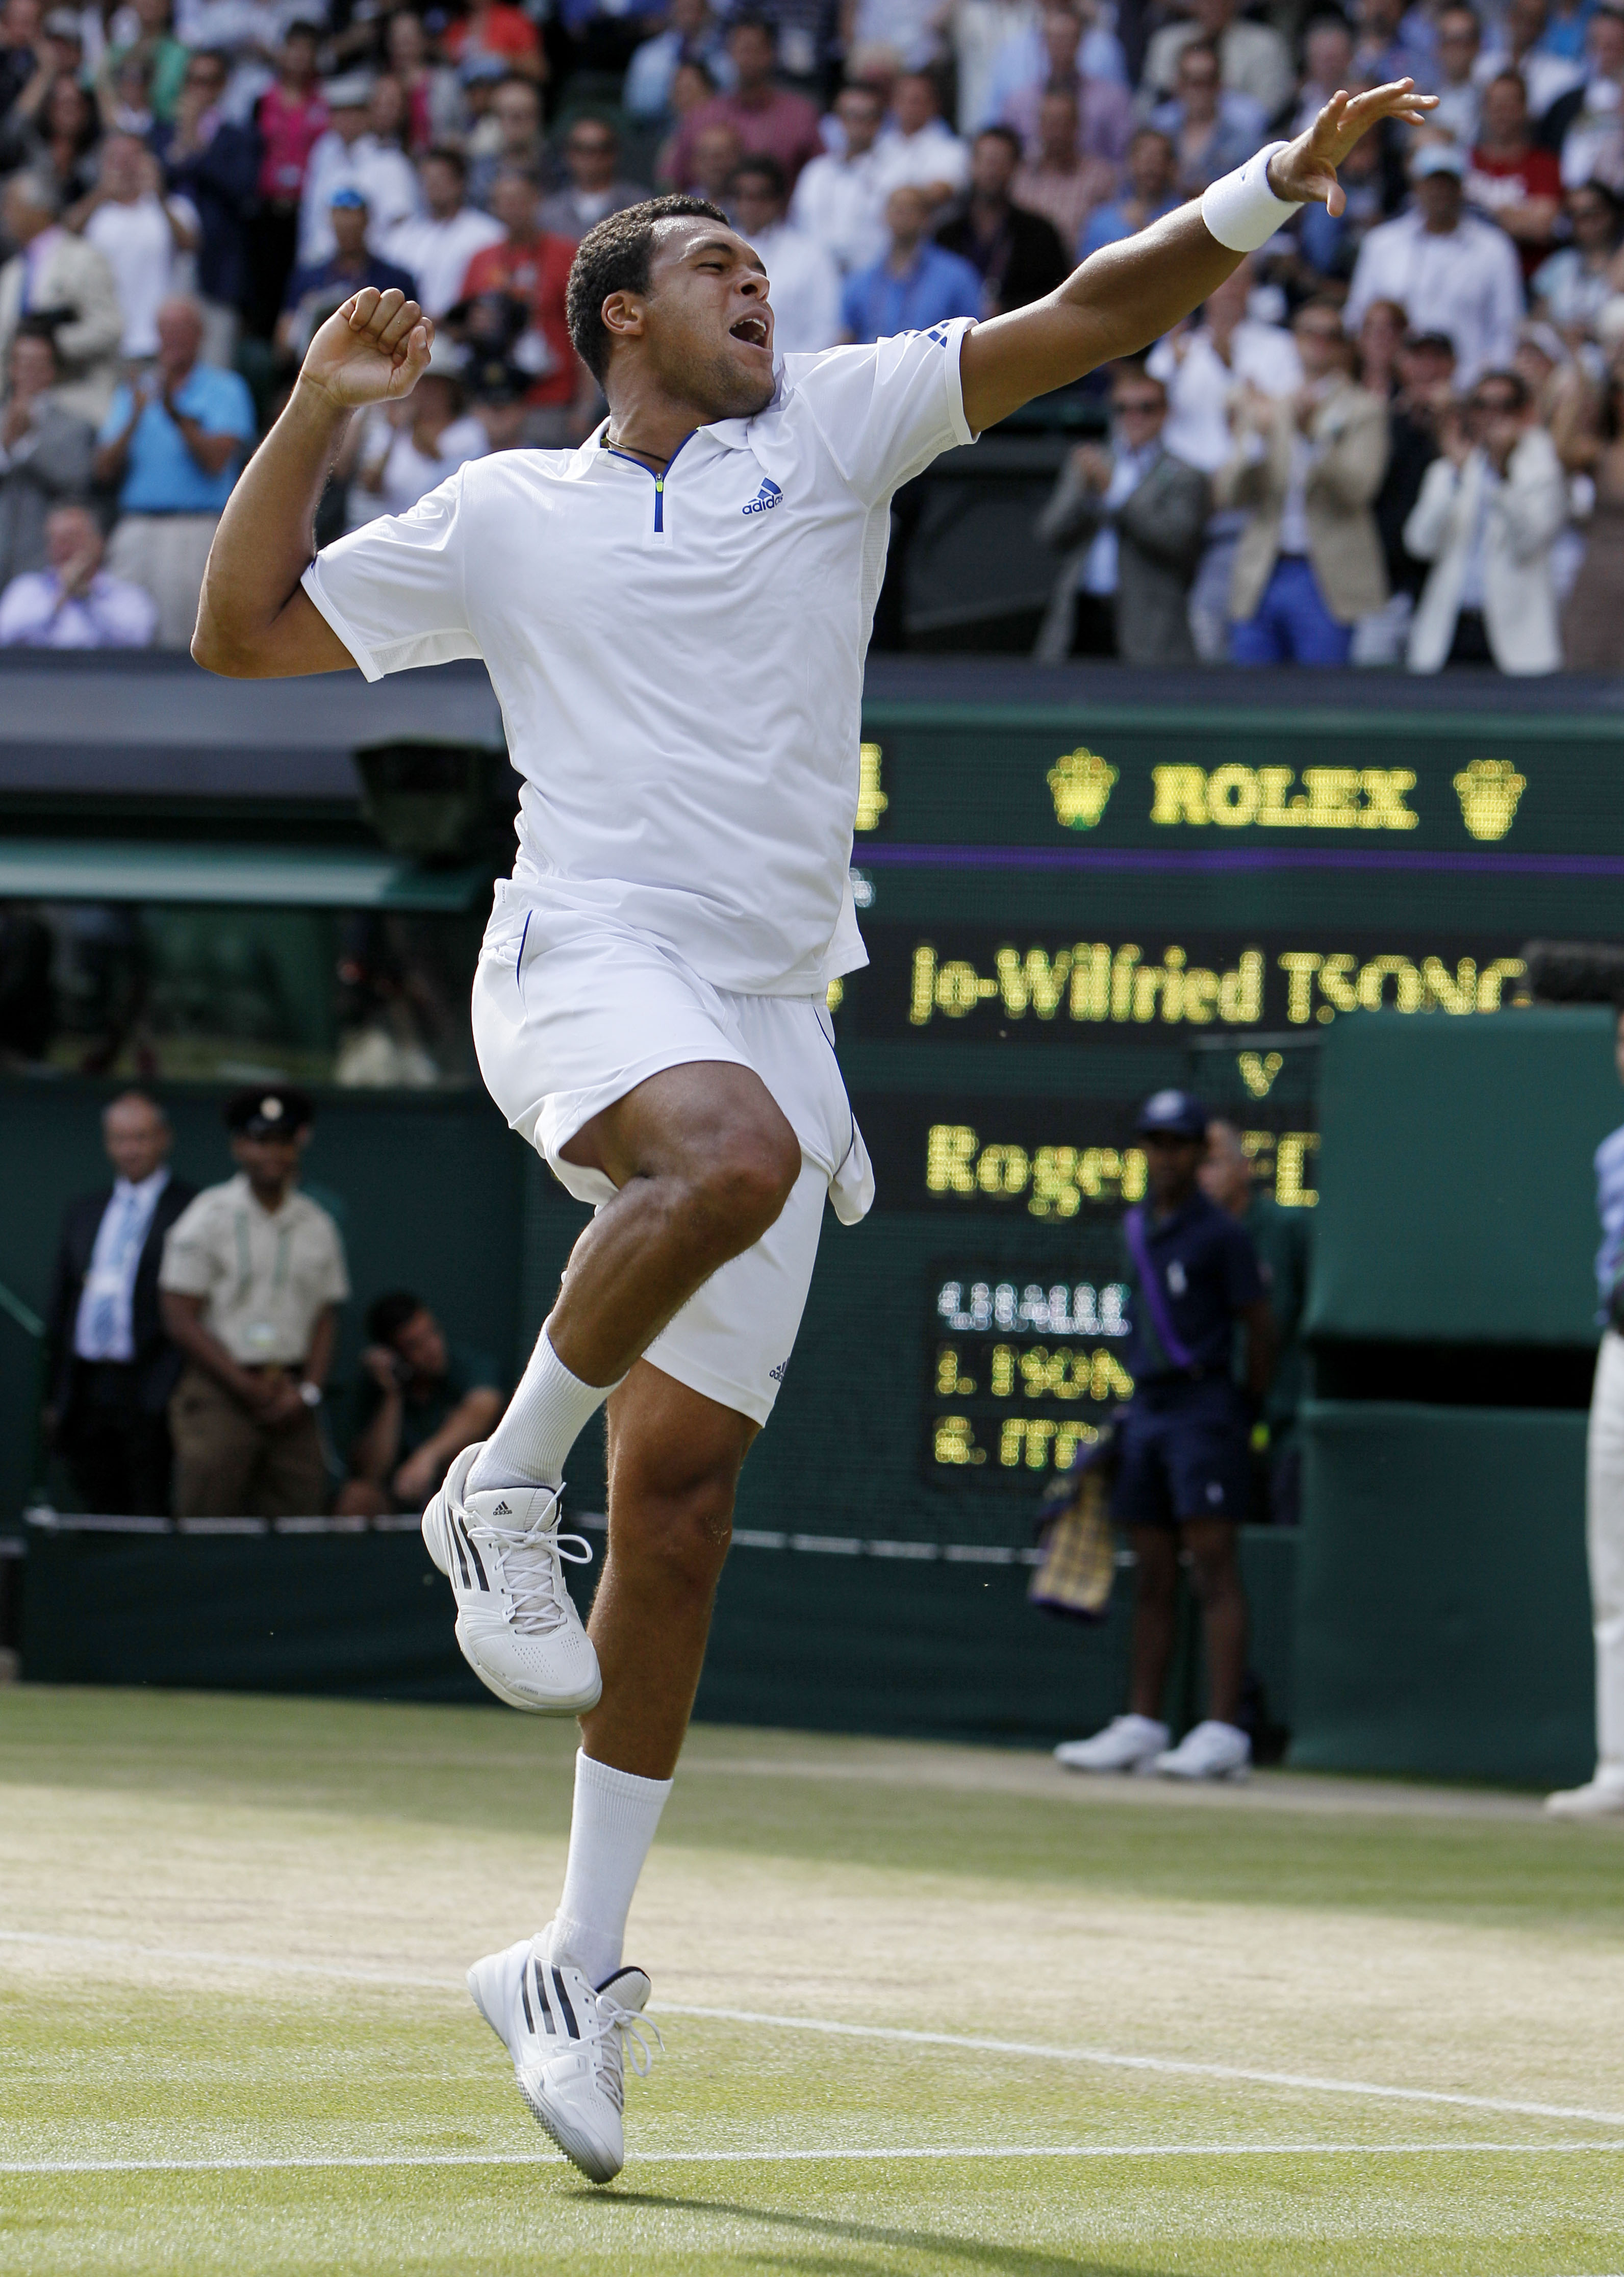 Wimbledon, Novak Djokovic, Tsonga, Tennis, Robin Soderling, Rafael Nadal, Björn Borg, Roger Federer, Federer